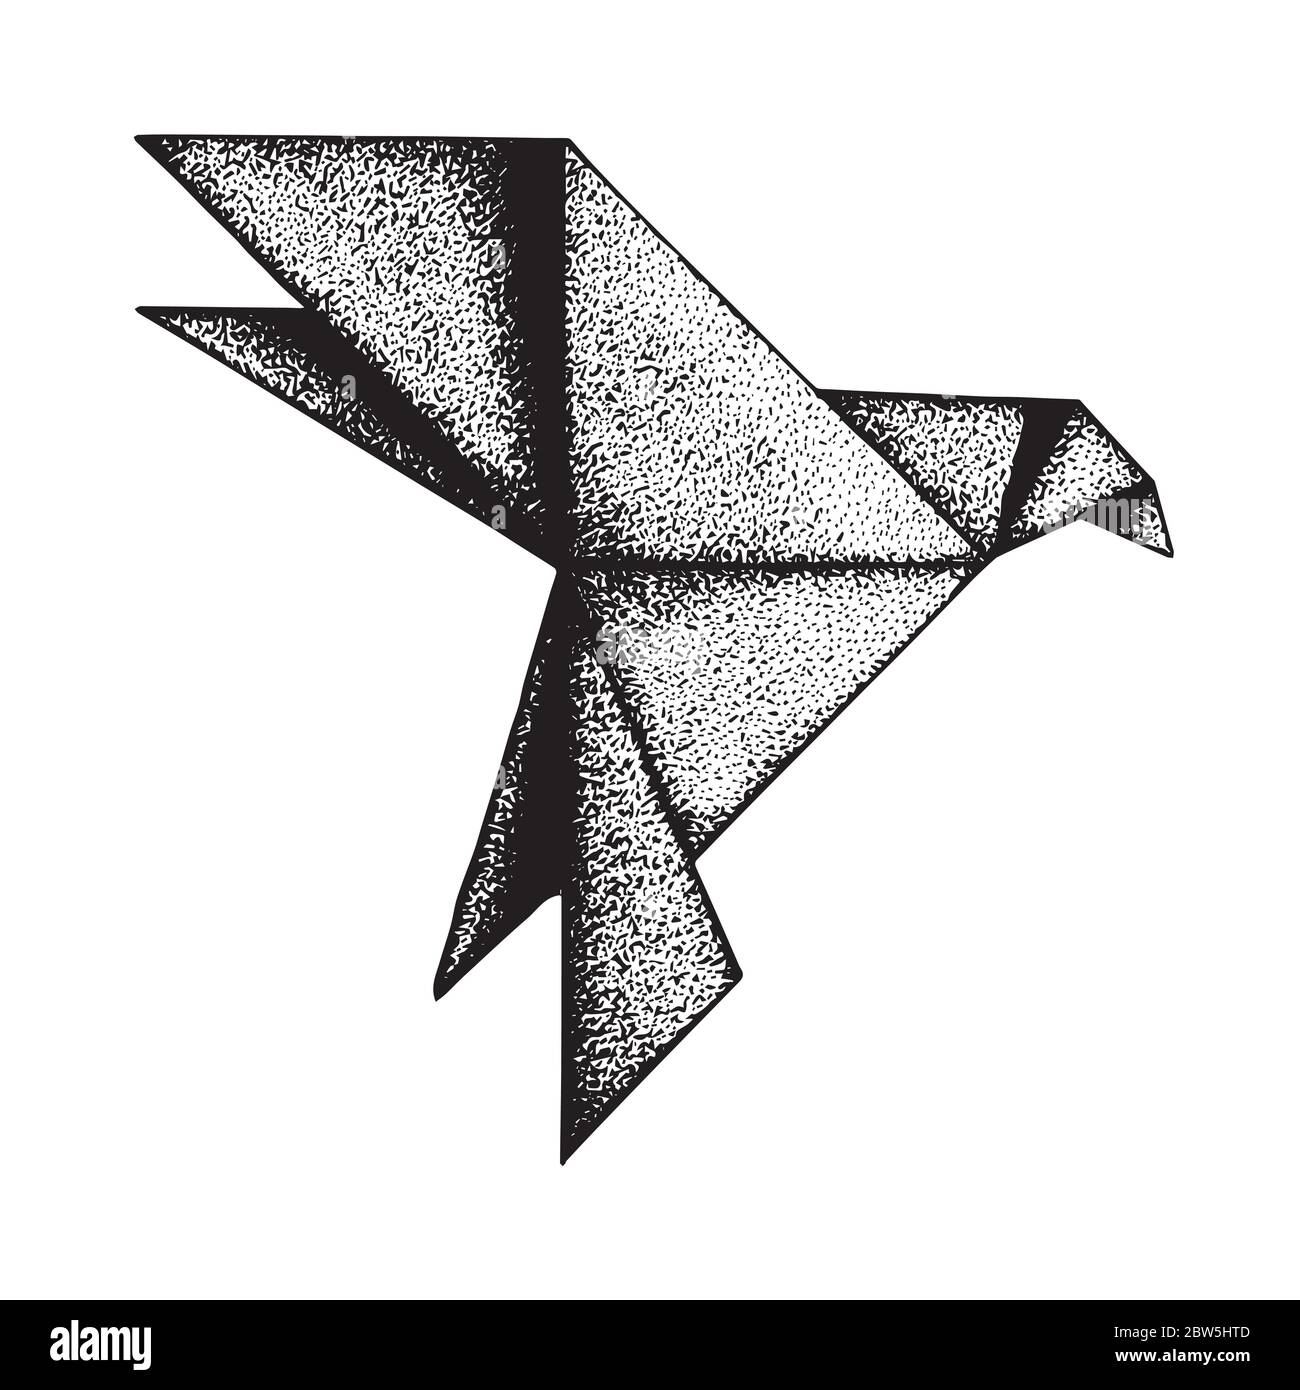 Uccello. Vintage di uccelli flaying, illustrazione vettoriale stile incisione. Disegno astratto di schizzo con simbolo di uccello. Illustrazione Vettoriale